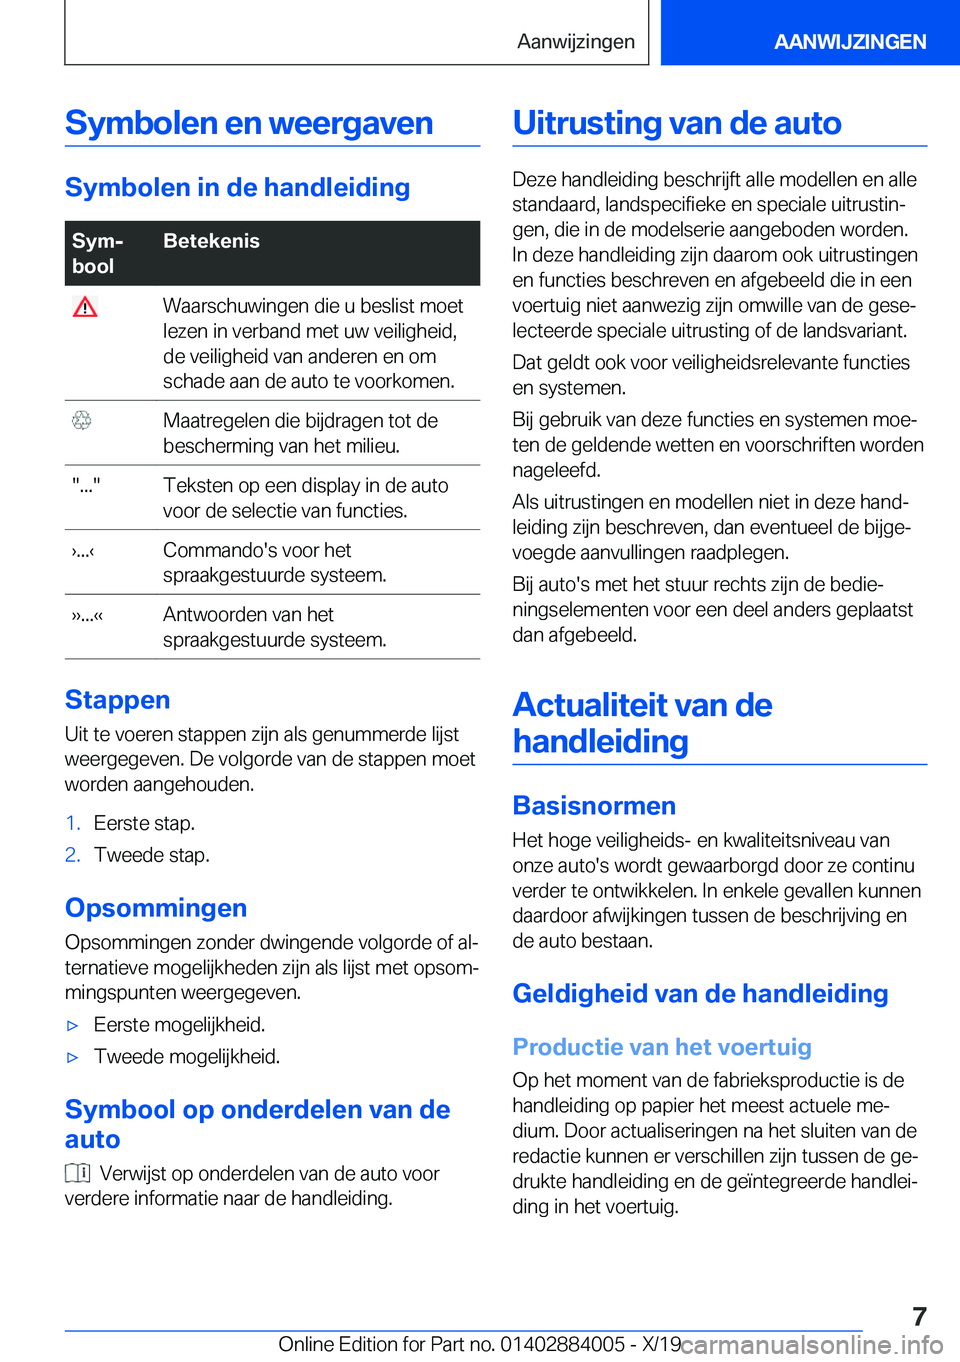 BMW X7 2020  Instructieboekjes (in Dutch) �S�y�m�b�o�l�e�n��e�n��w�e�e�r�g�a�v�e�n
�S�y�m�b�o�l�e�n��i�n��d�e��h�a�n�d�l�e�i�d�i�n�g
�S�y�mj
�b�o�o�l�B�e�t�e�k�e�n�i�s��W�a�a�r�s�c�h�u�w�i�n�g�e�n��d�i�e��u��b�e�s�l�i�s�t��m�o�e�t
